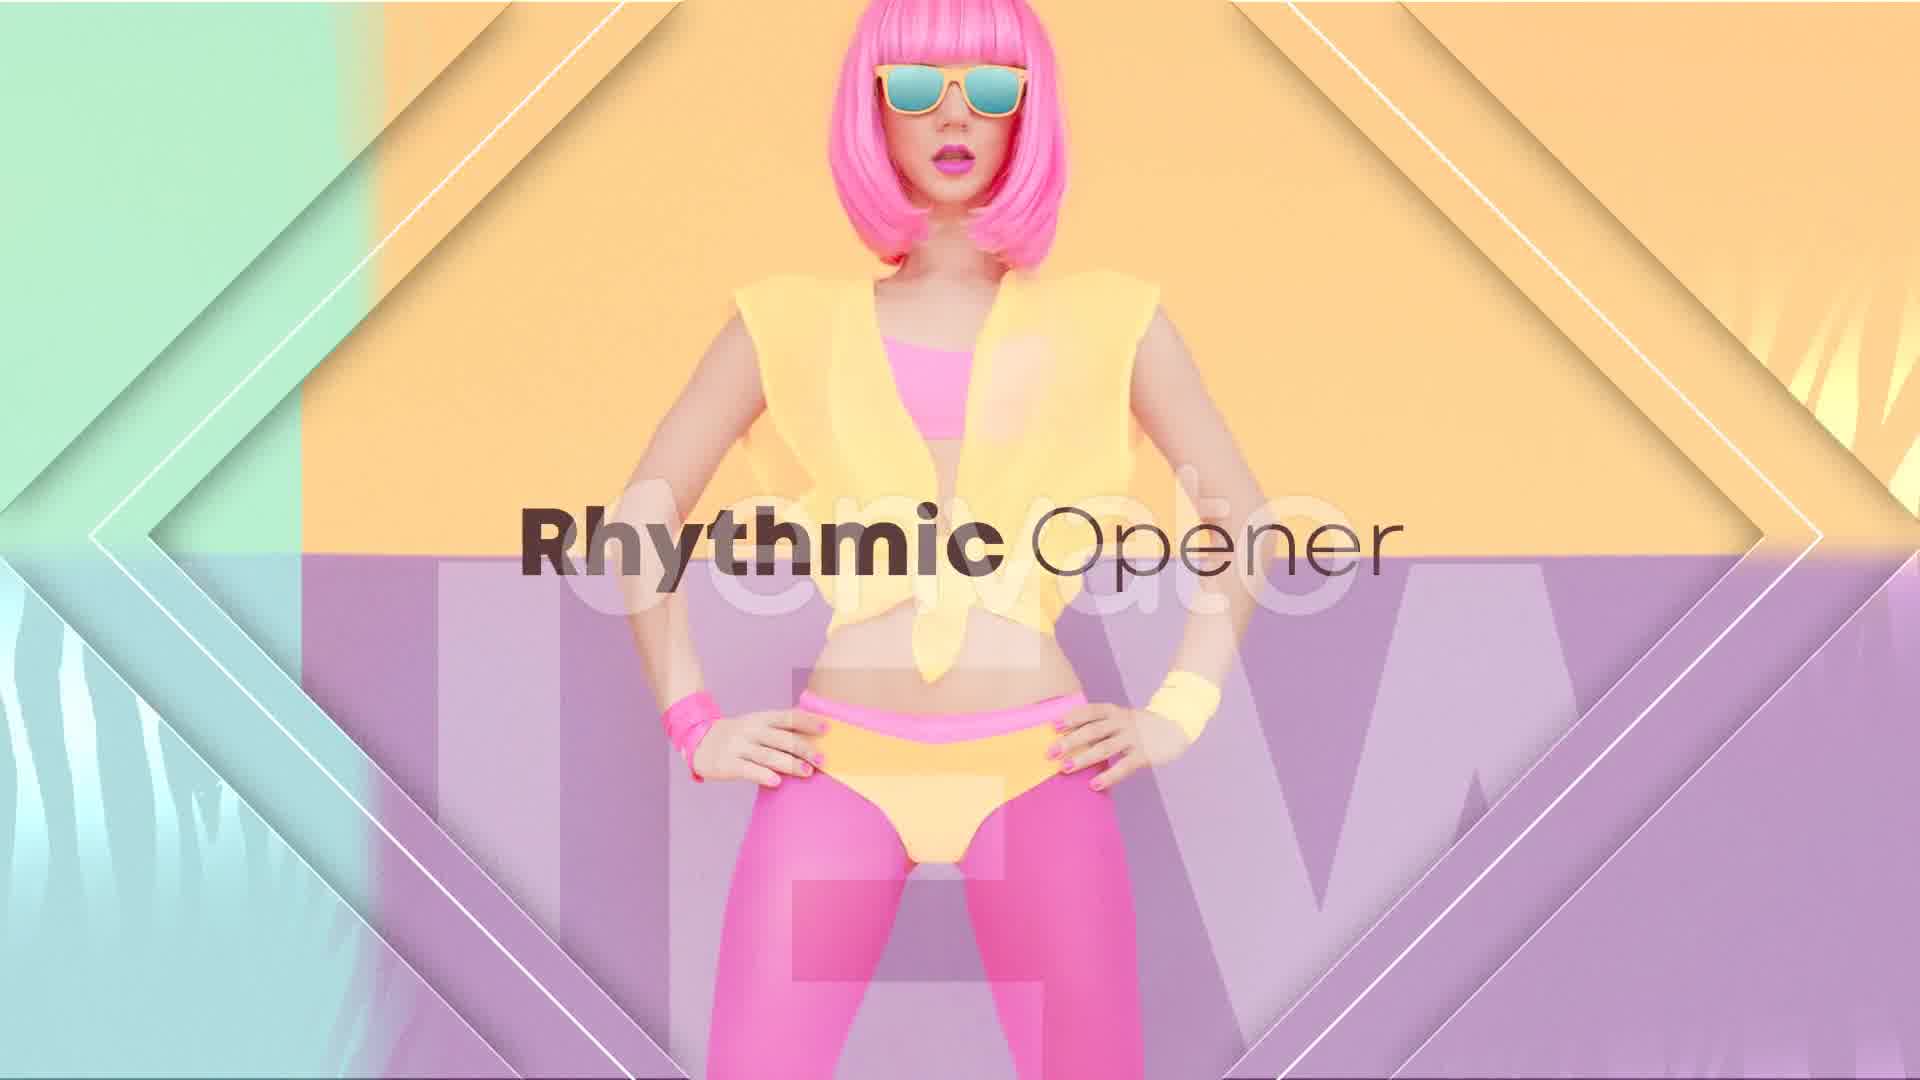 Rhythmic Opener - Download Videohive 23426363